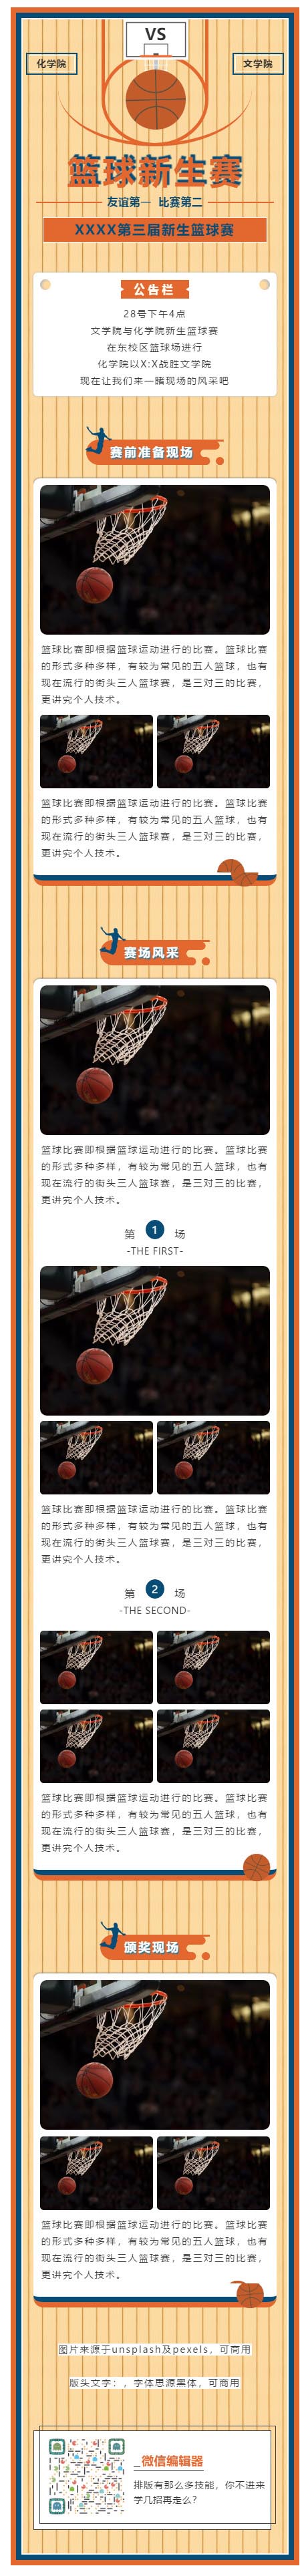 篮球比赛体育运动会篮球赛微信公众号图文模板